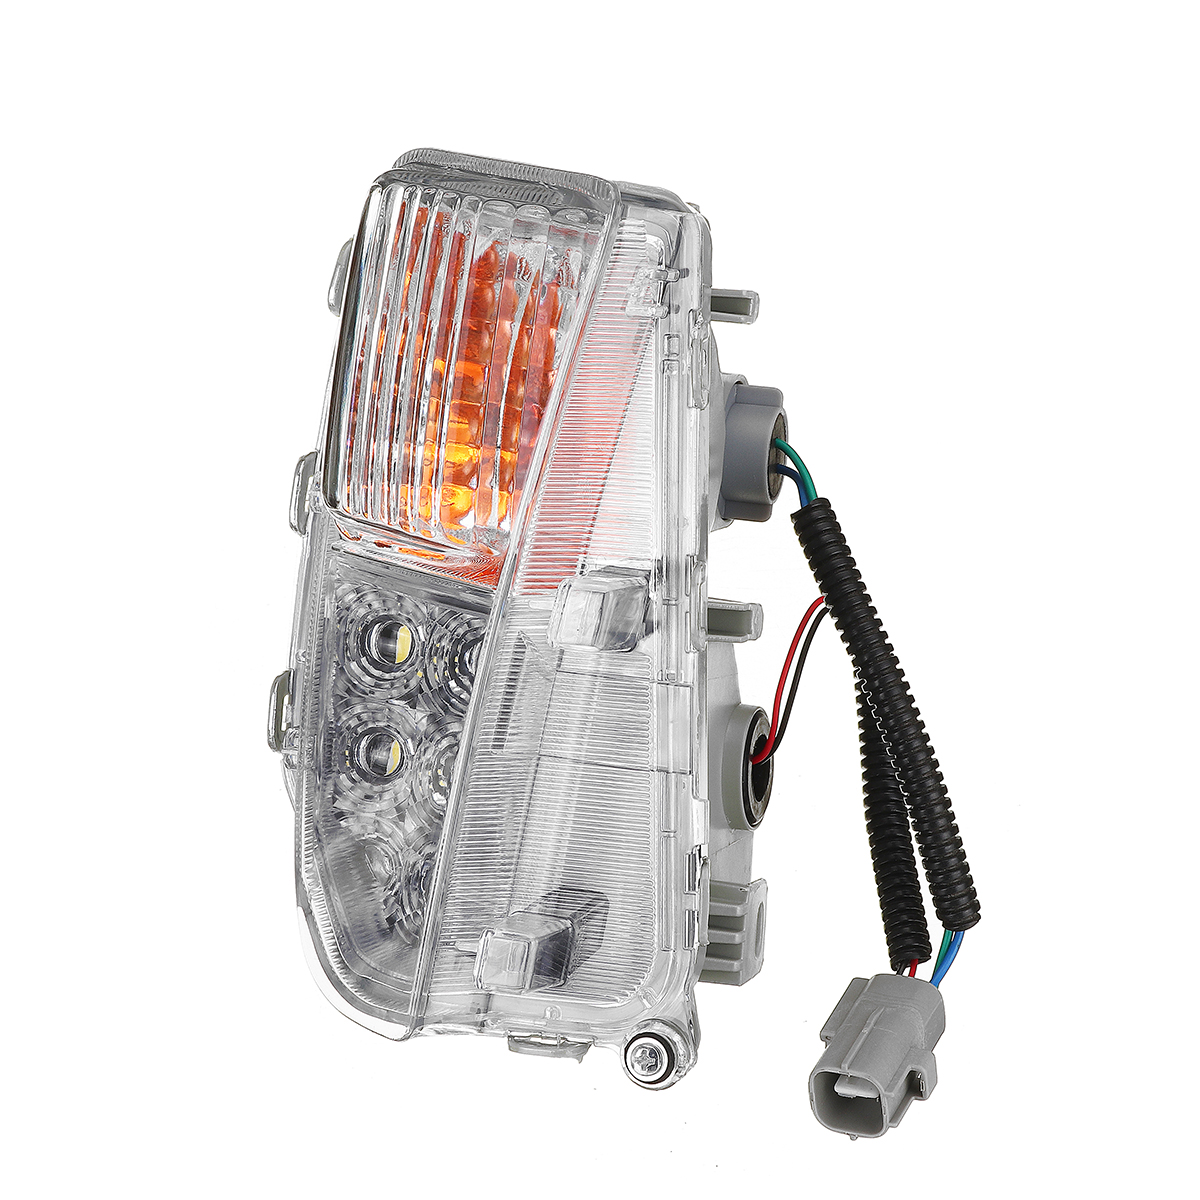 Pára-choques dianteiro do carro LED Lâmpada de nevoeiro DRL Light Day Running Lamp esquerda / direita para Toyota Prius 12-15